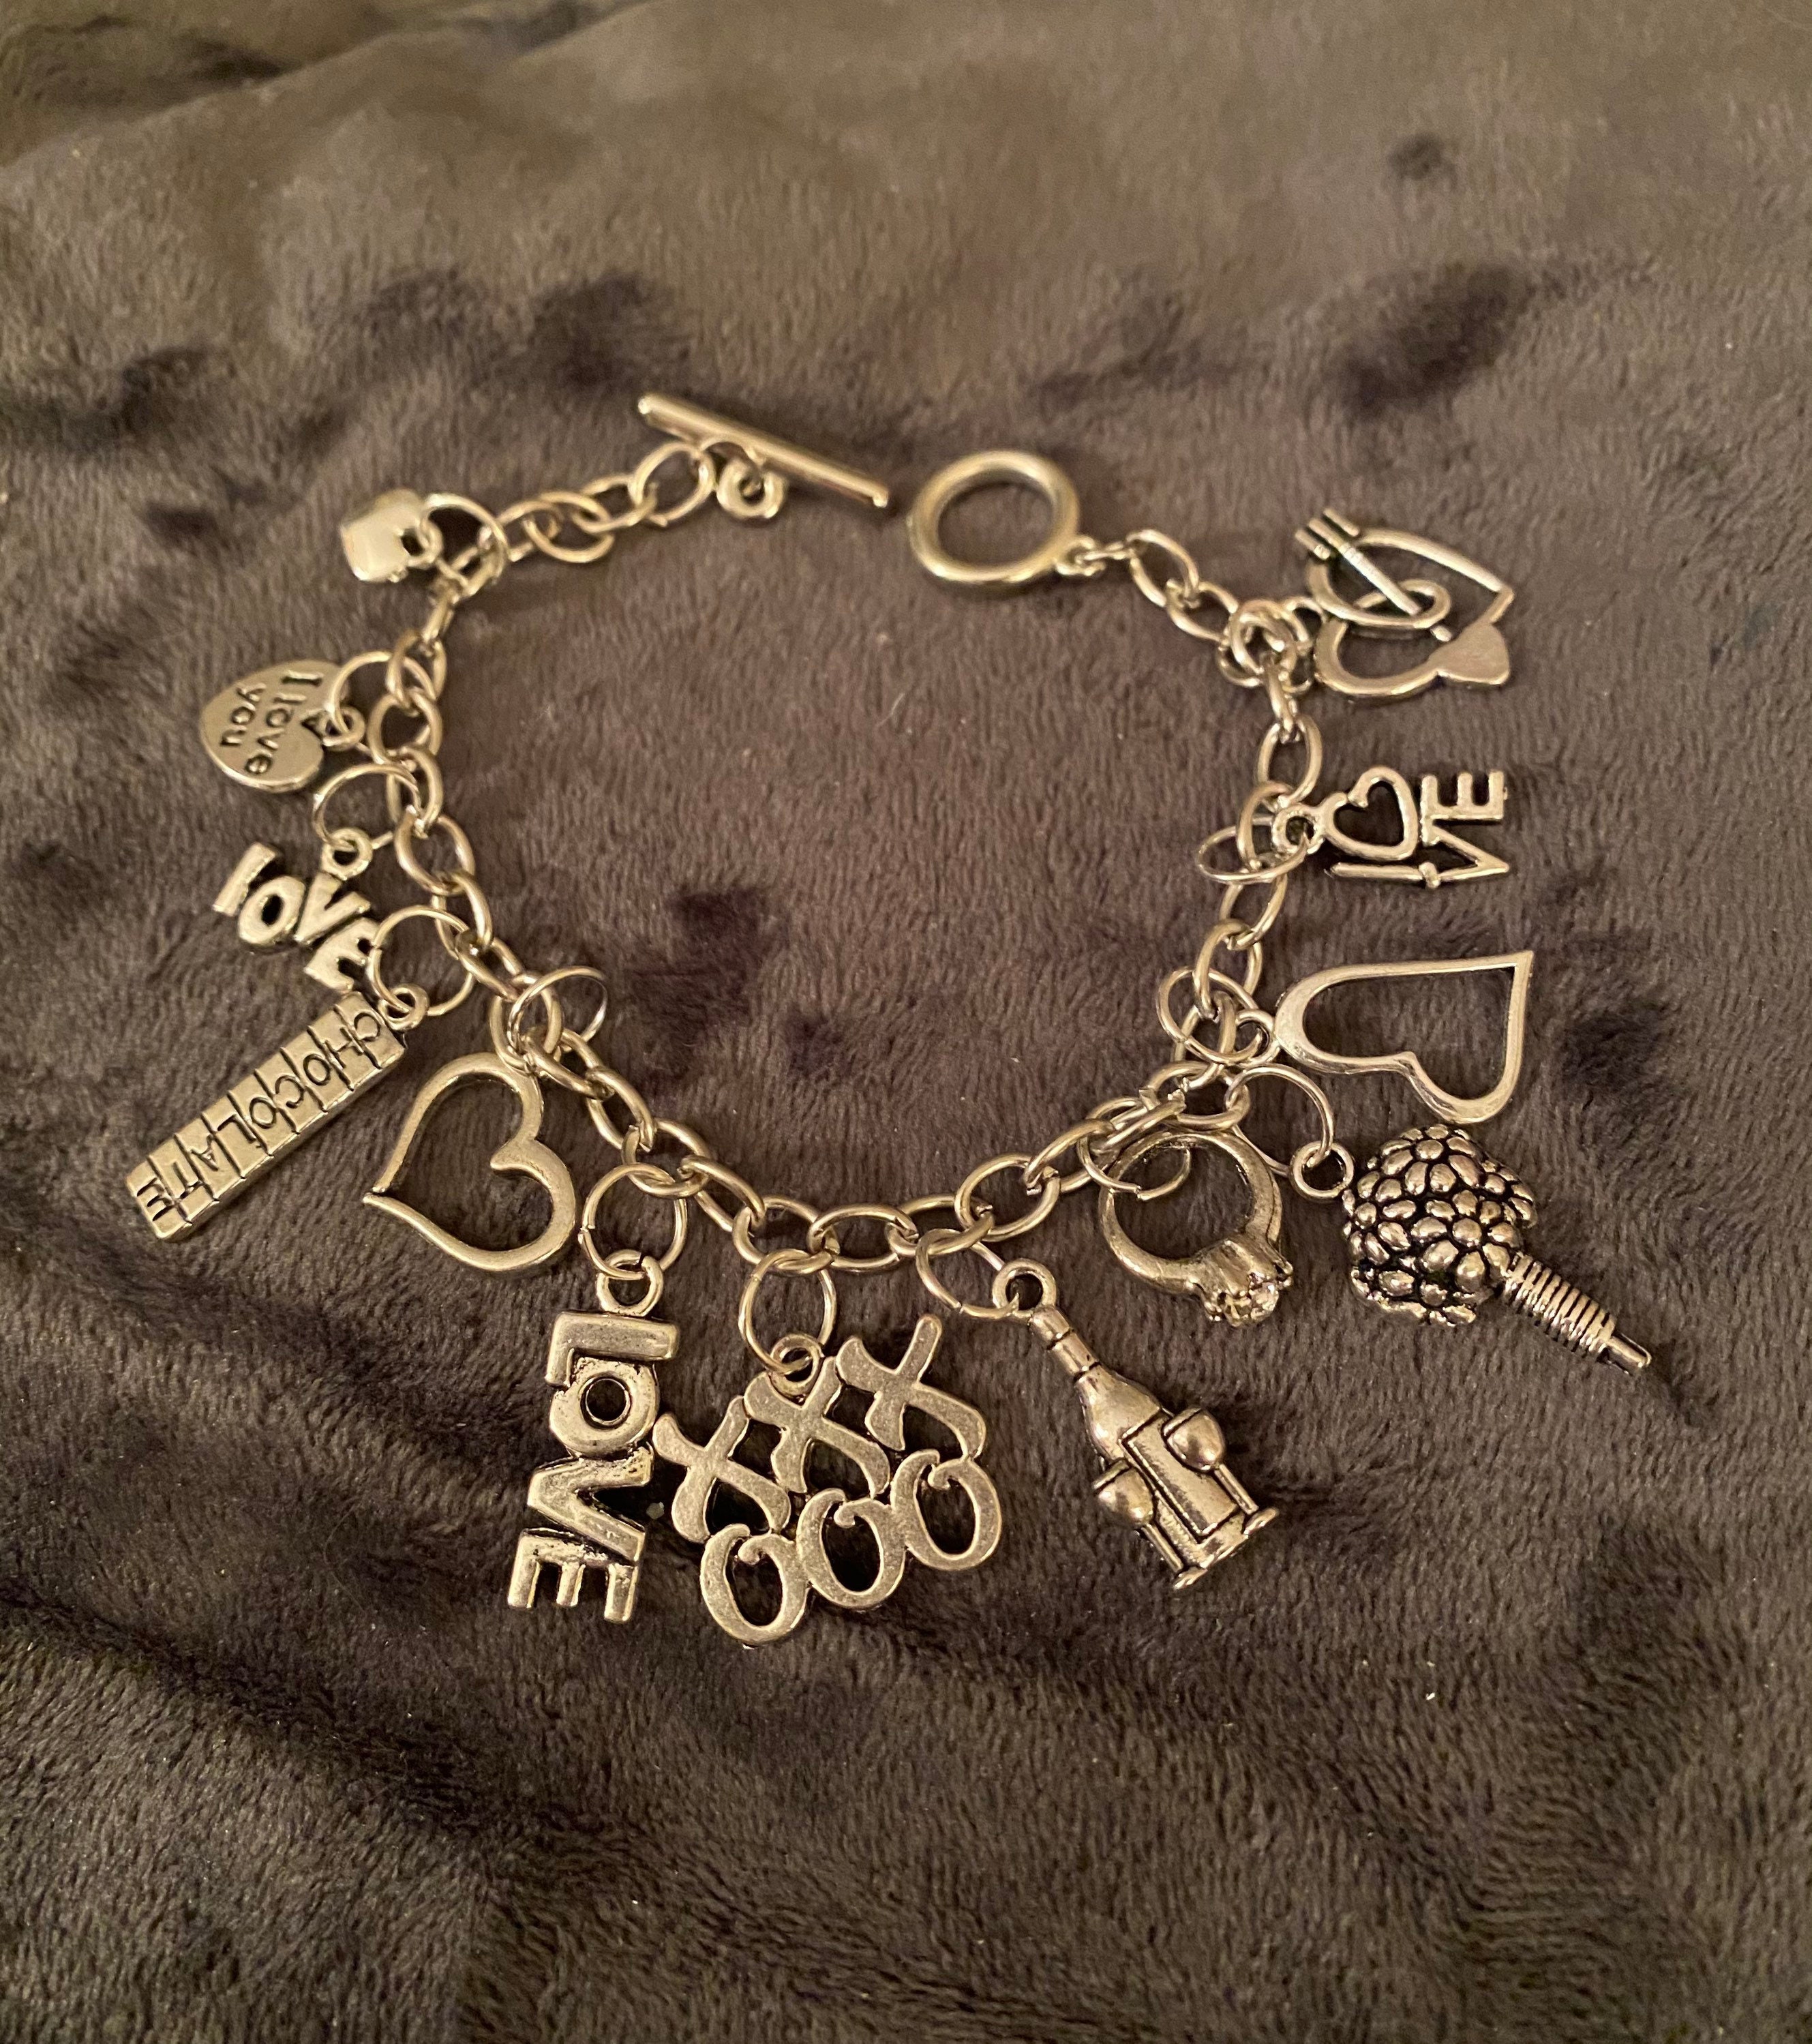 Netaya Party wear Sterling Silver White Sapphire Lock  Keys Charm Bracelet  1910 Gms 2ssbr059